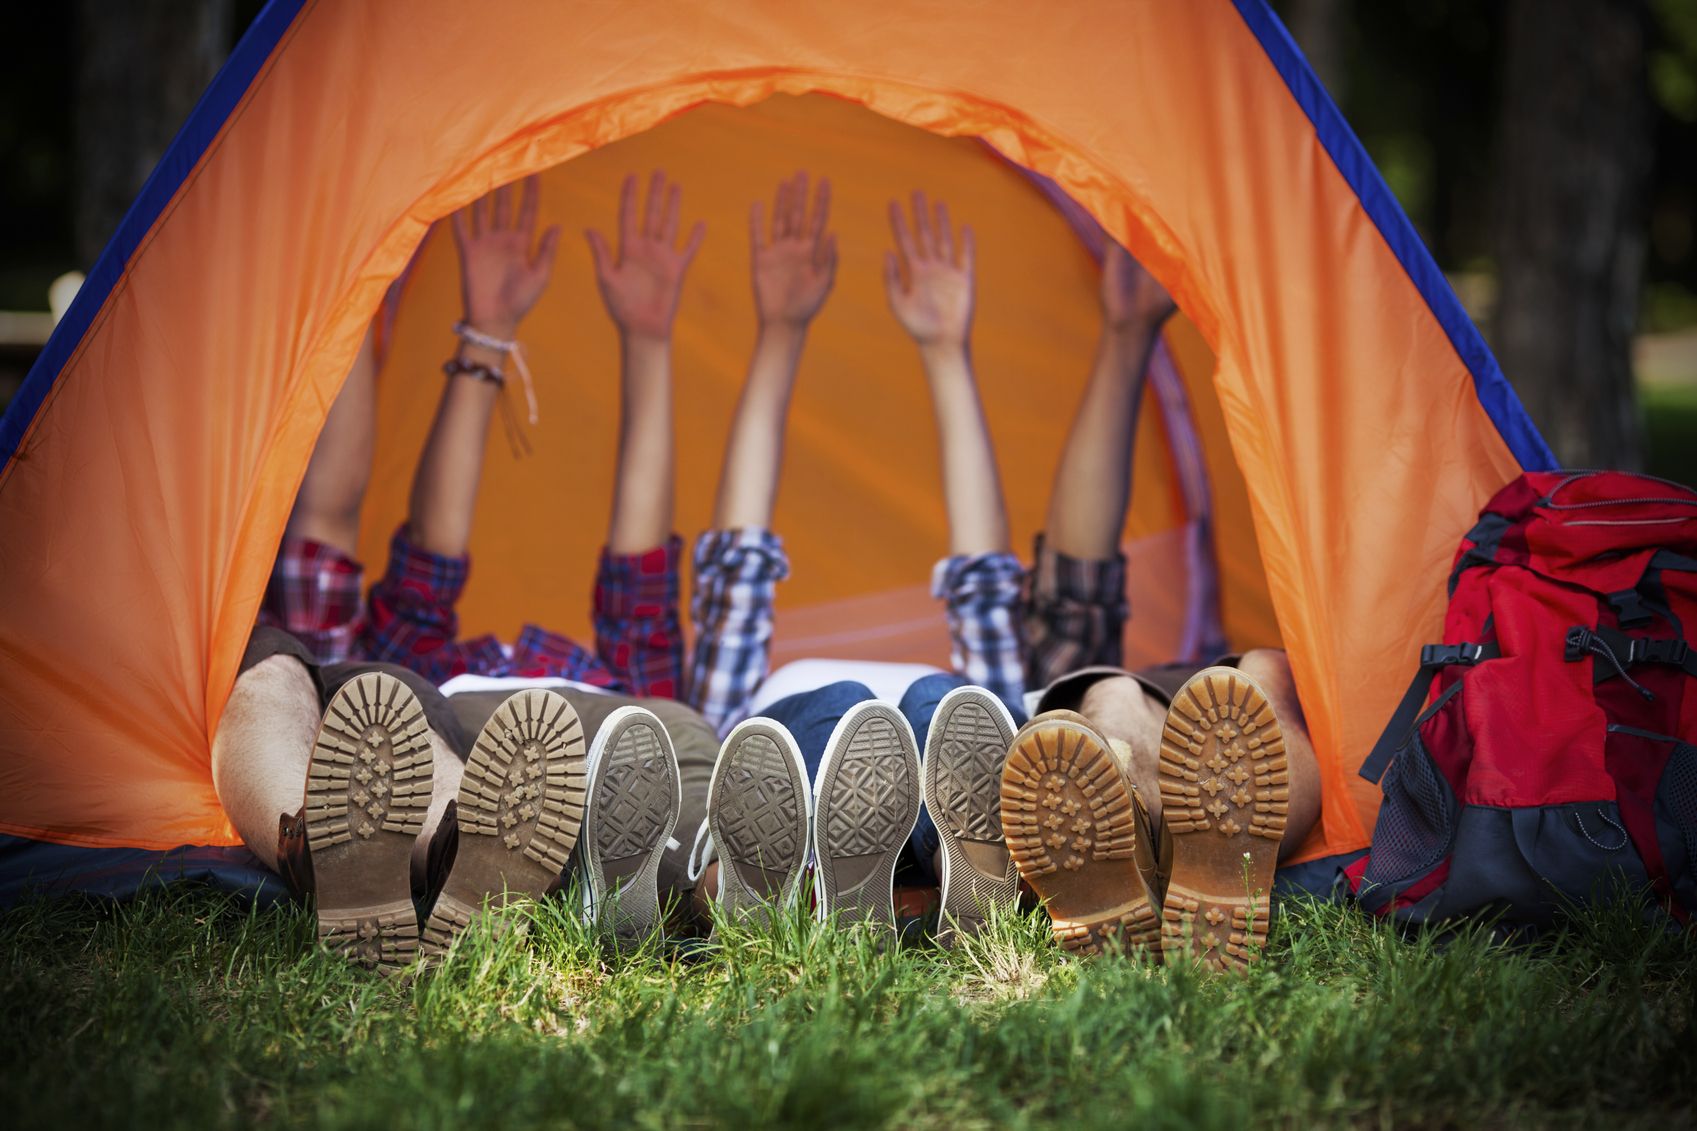 семейные палатки для отдыха на природе